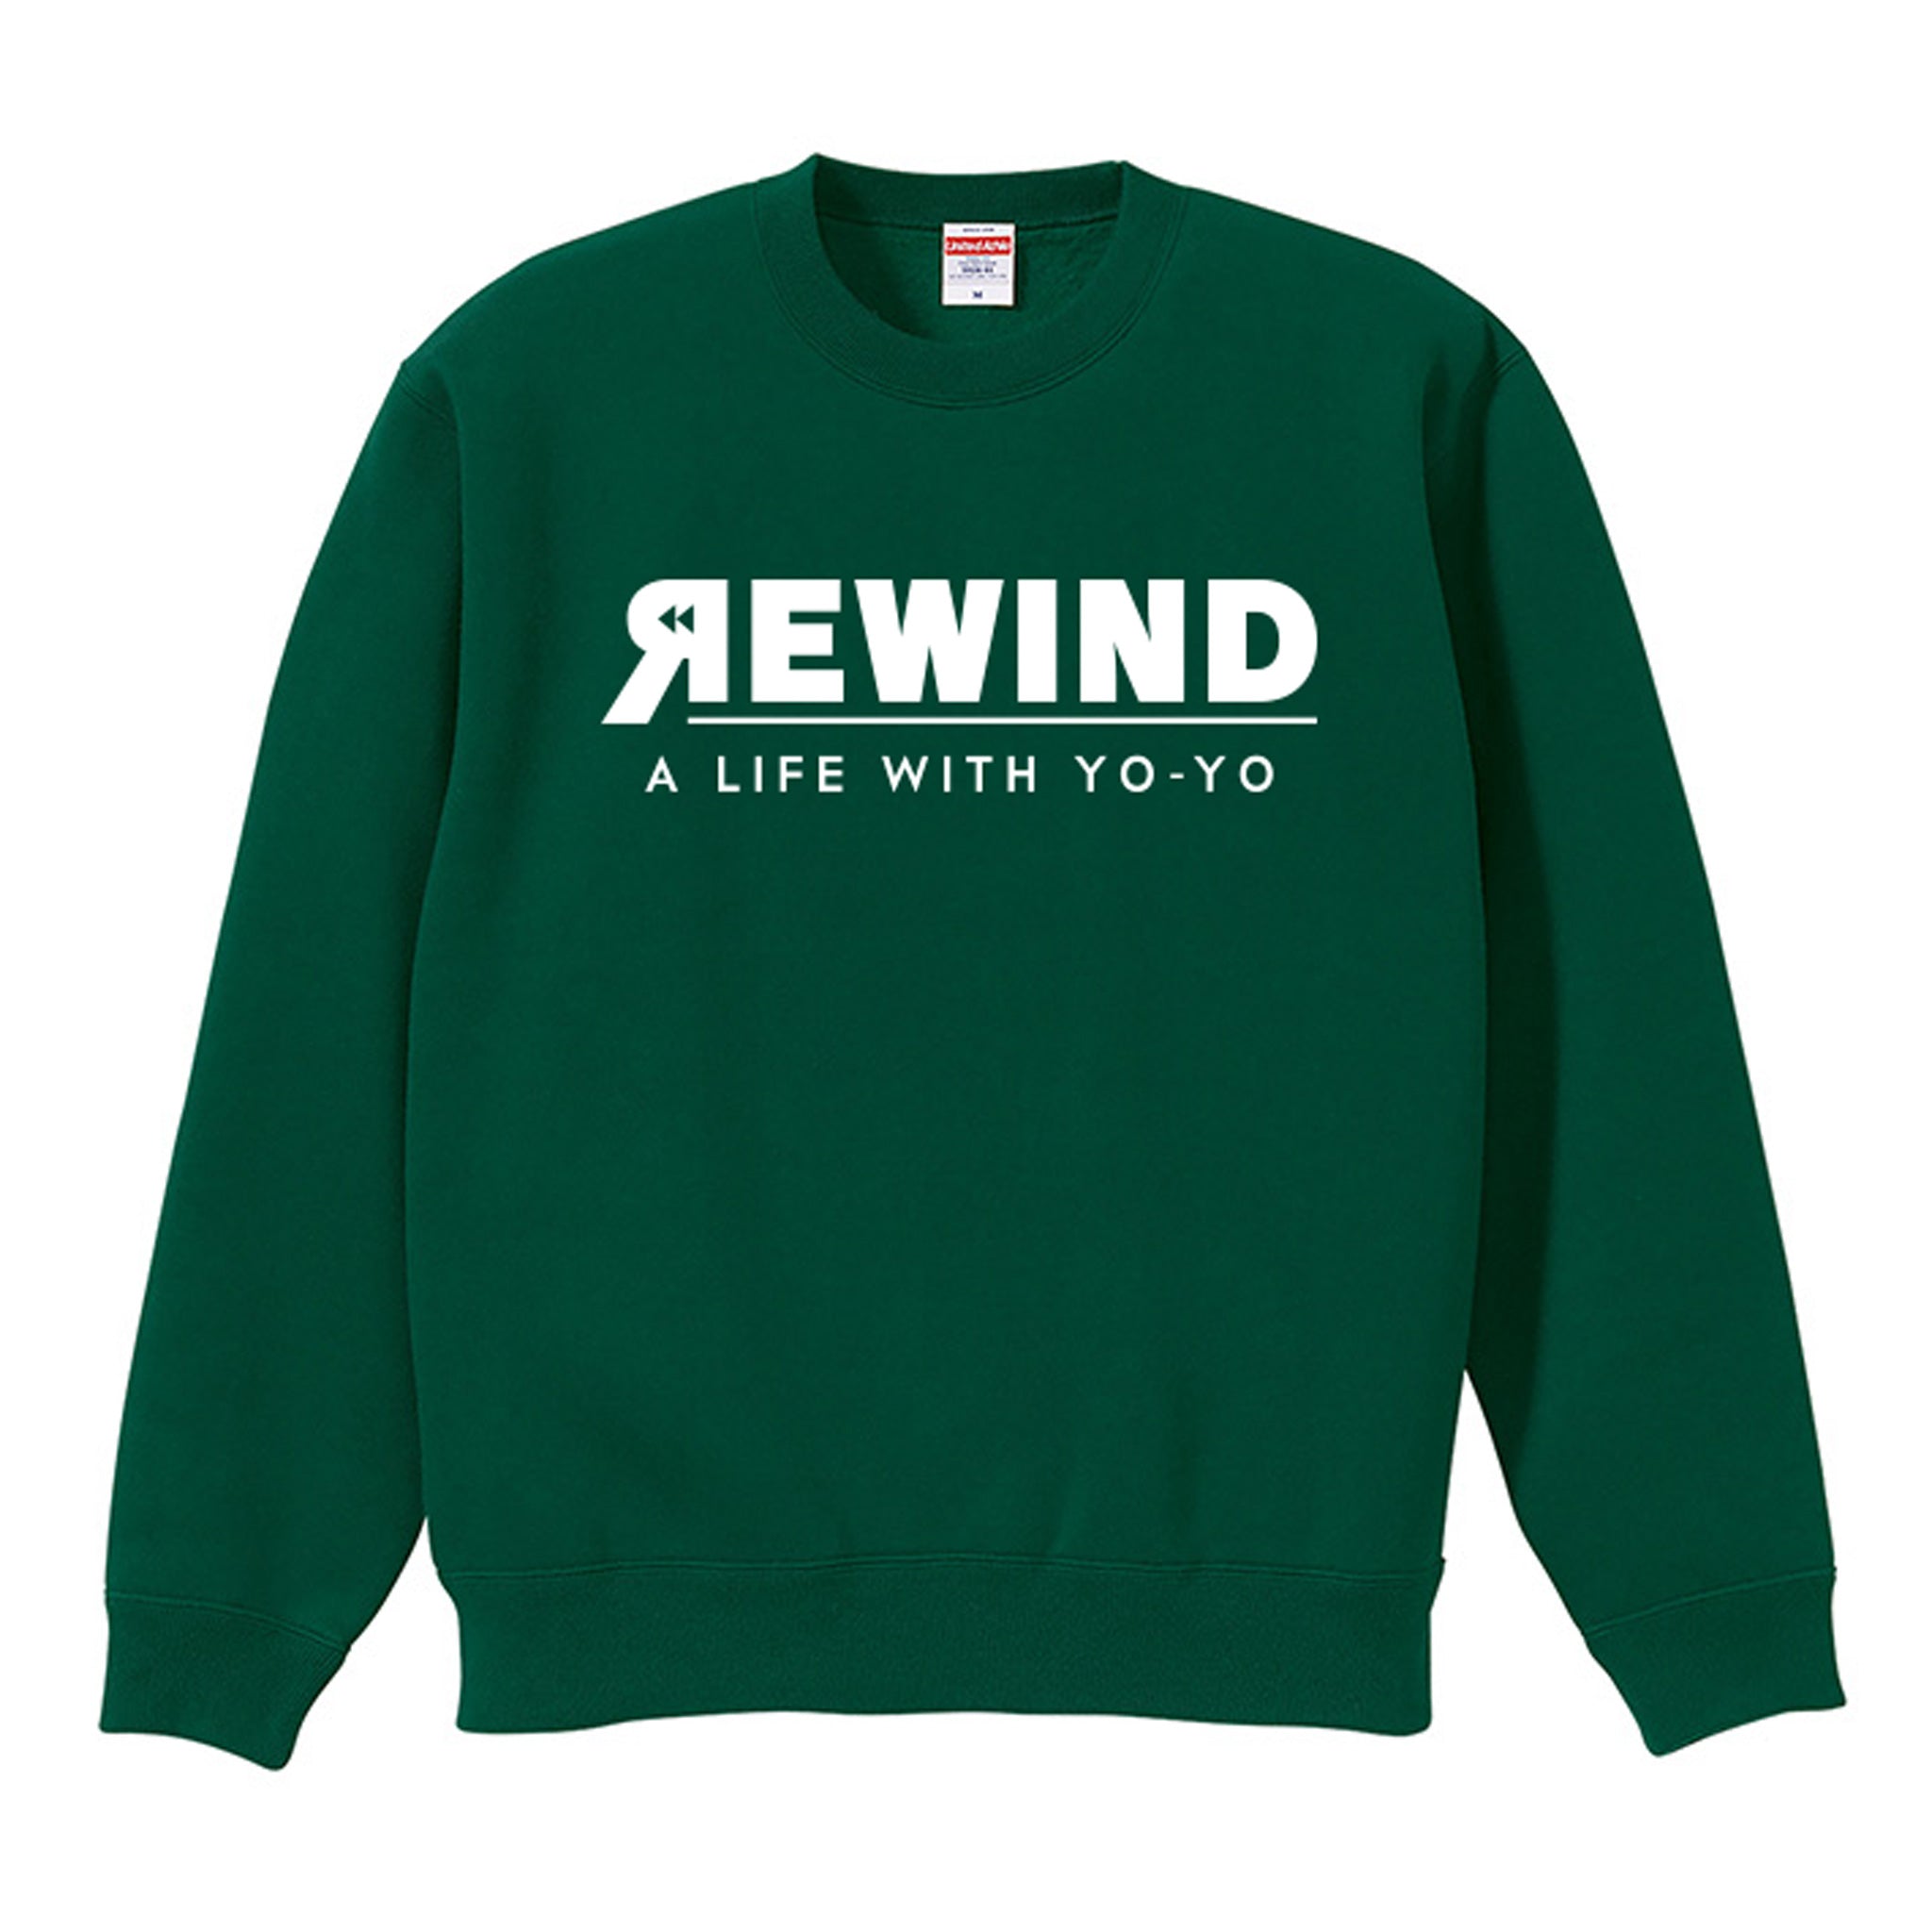 REWIND -A LIFE WITH YO-YO- スウェット (グリーン / ホワイトロゴ)